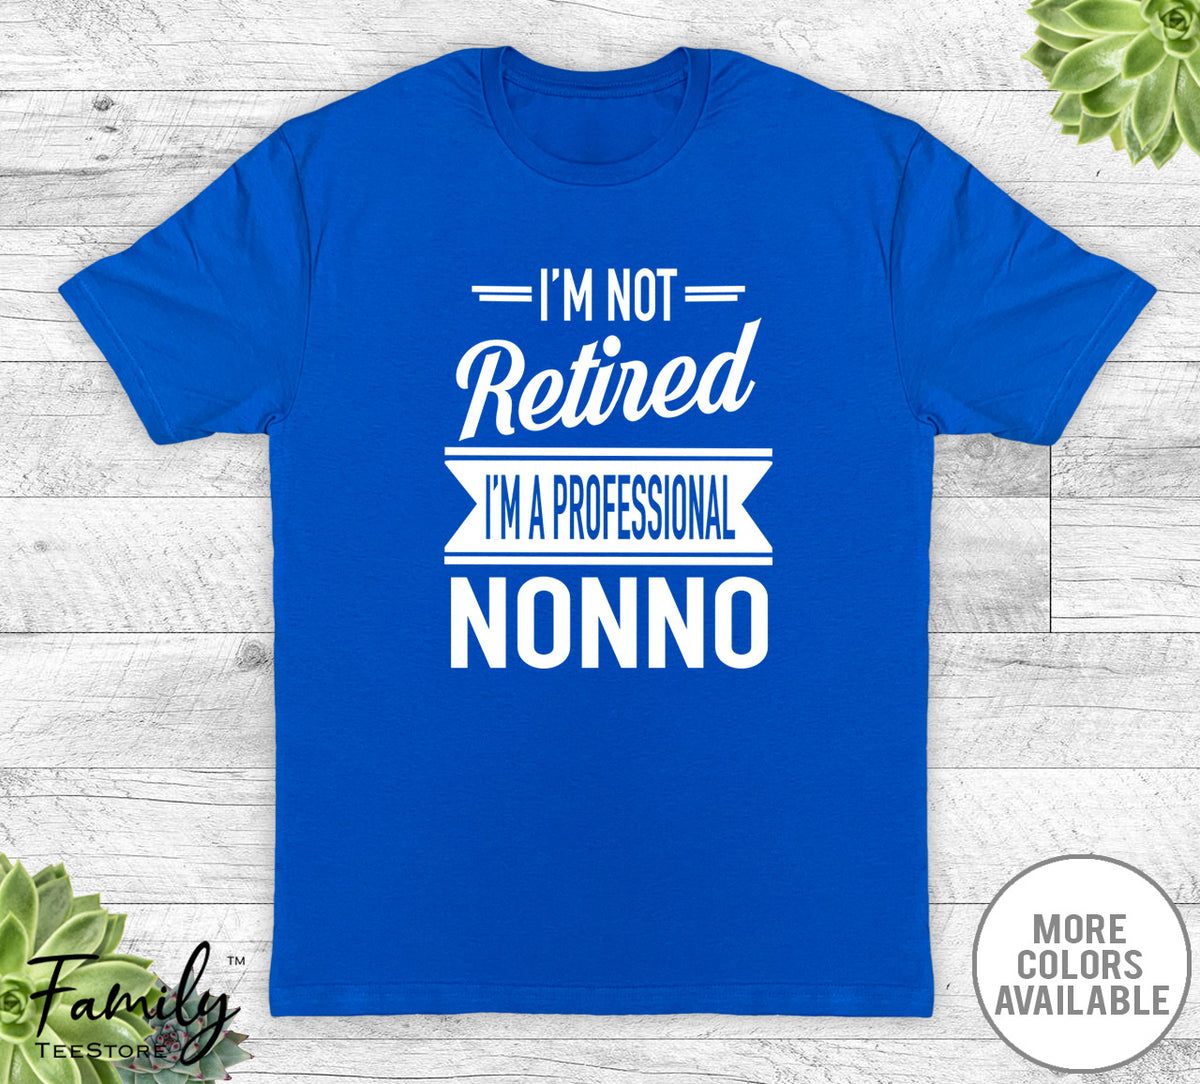 I'm Not Retired I'm A Professional Nonno - Unisex T-shirt - Nonno Shirt - Nonno Gift - familyteeprints